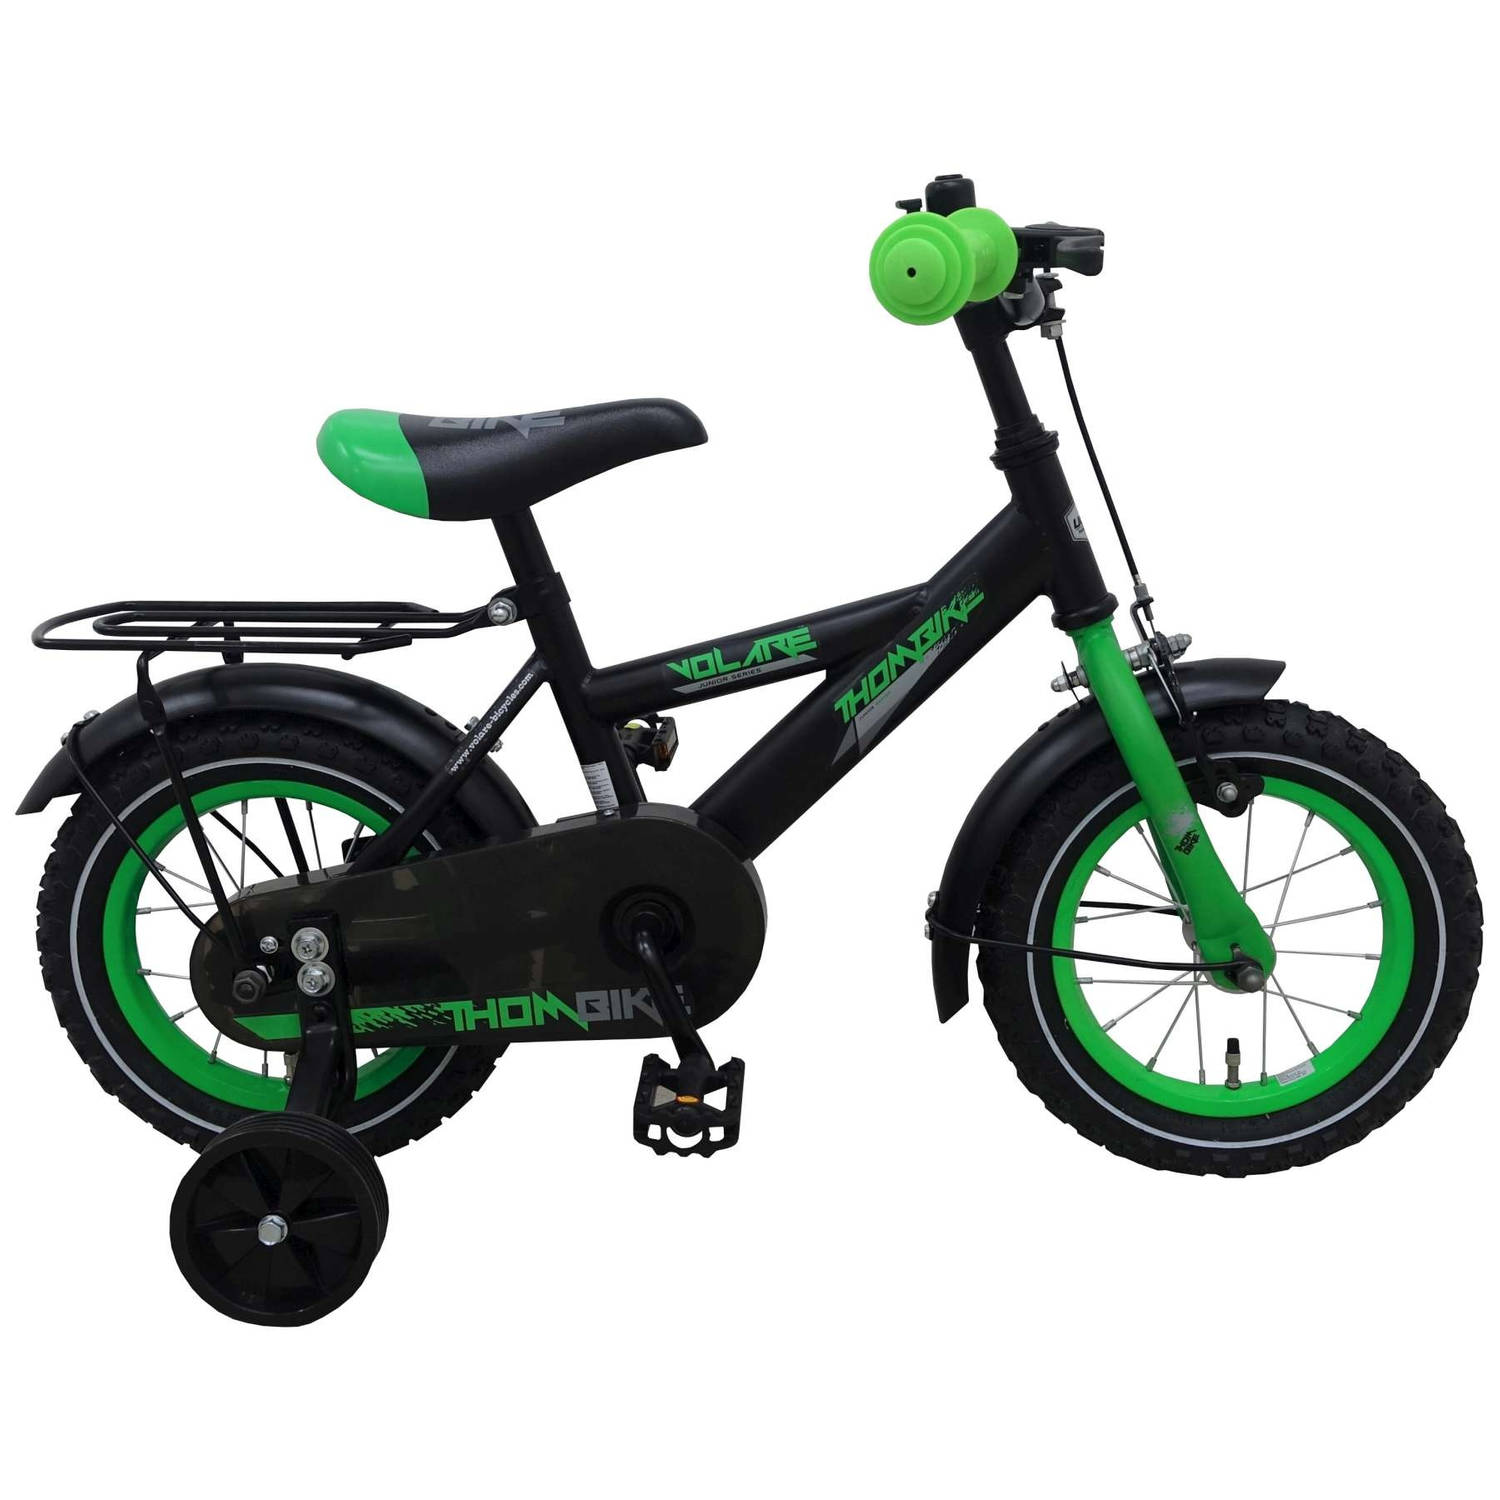 Dij op vakantie regel Volare Thombike kinderfiets - 12 inch wielen - zwart/groen | Blokker